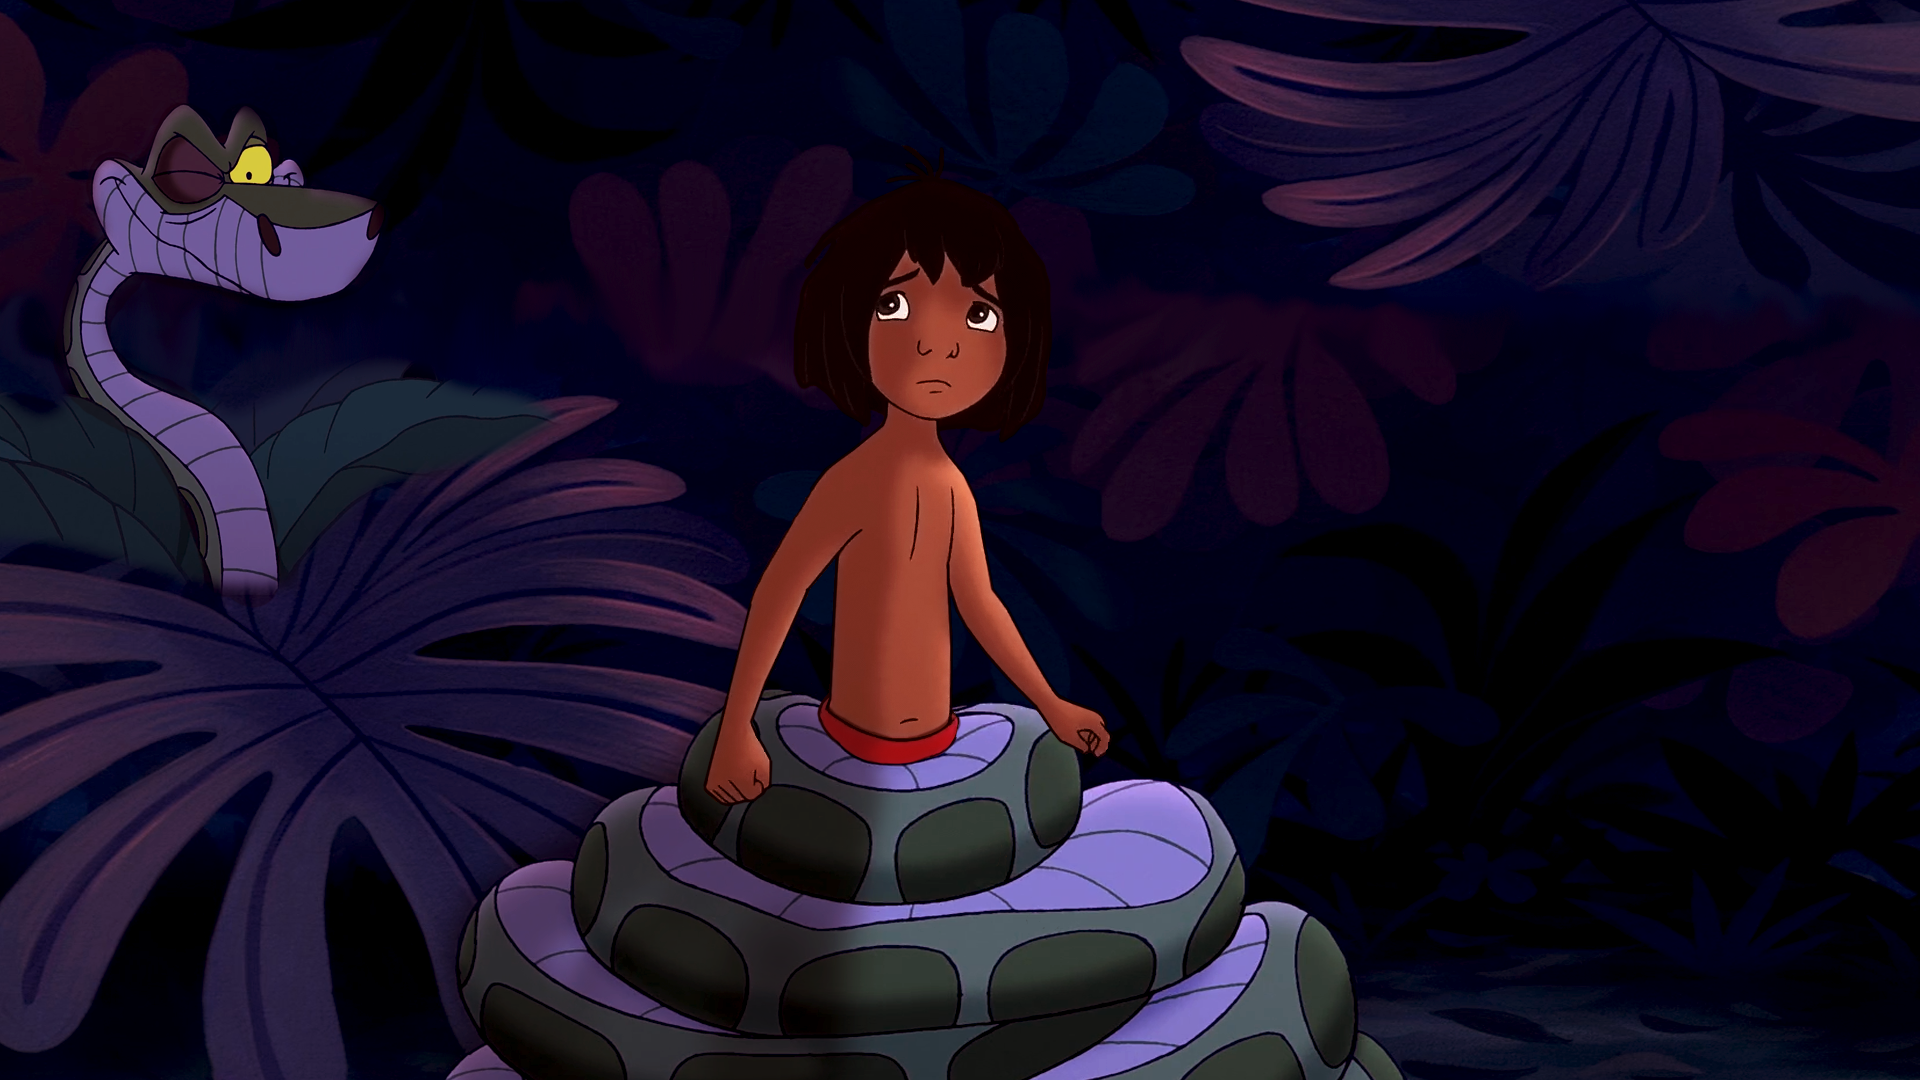 Rama rescues mowgli from kaa. 